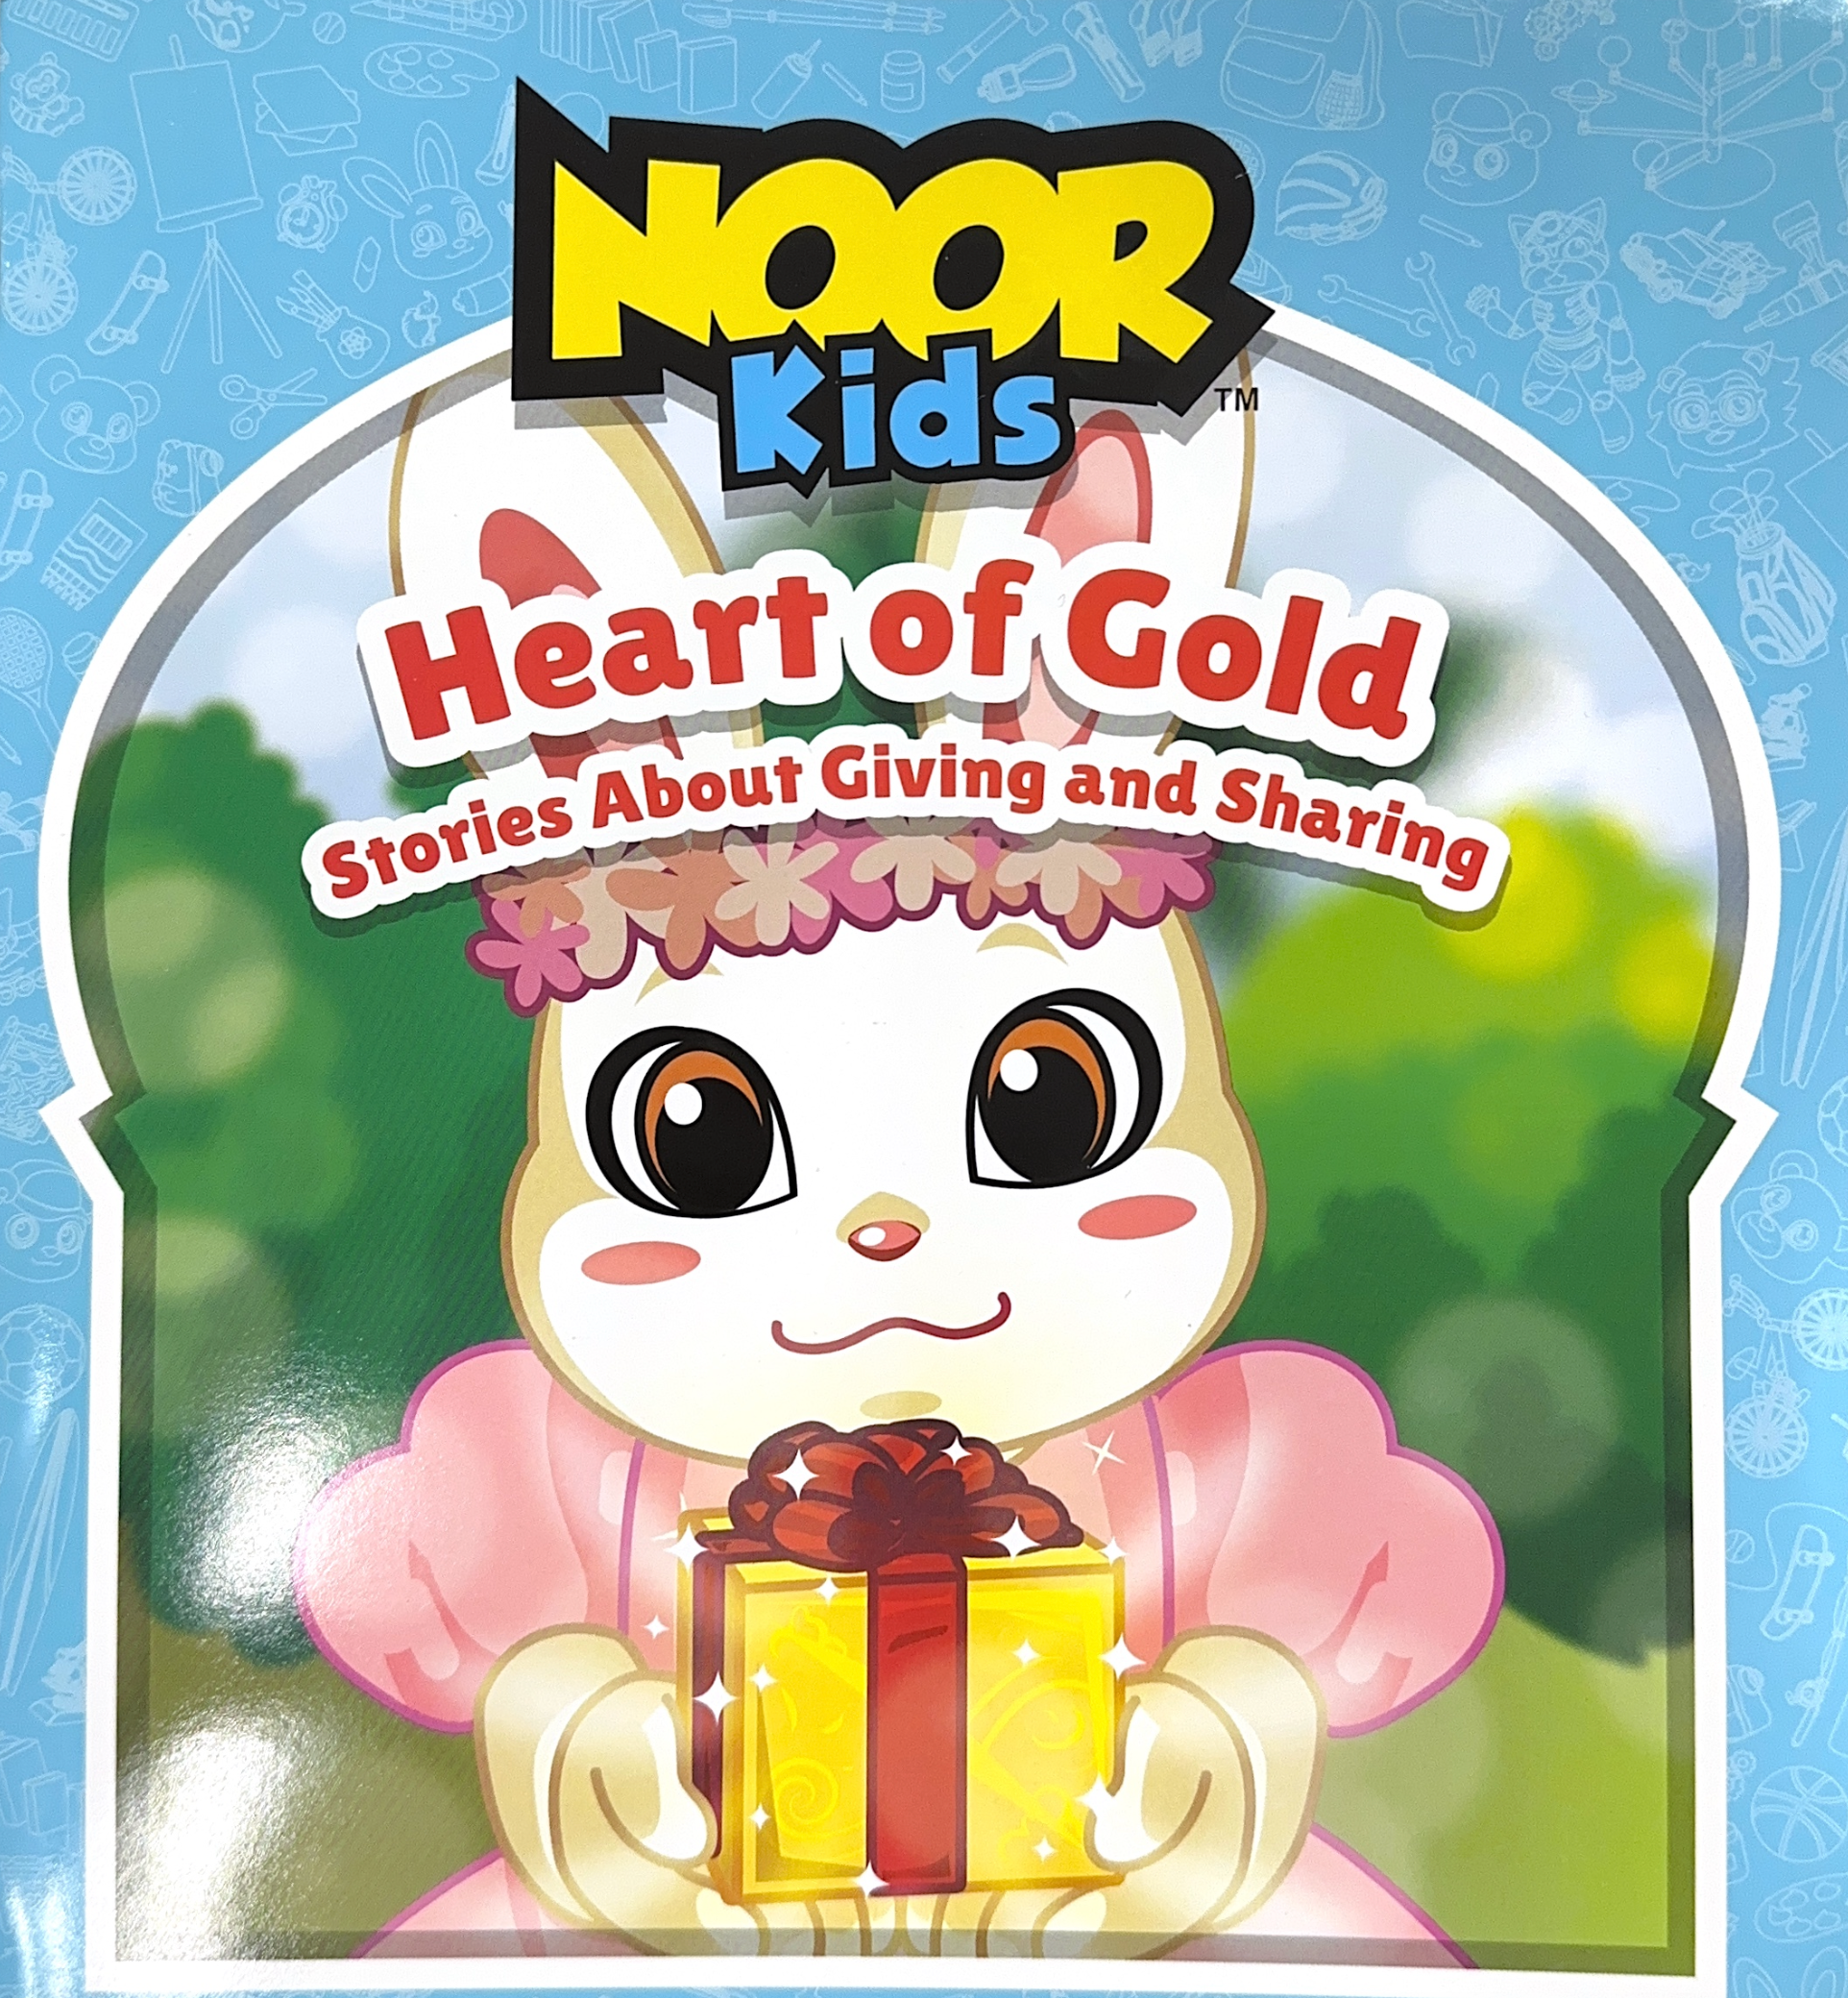 Noor Kids: Heart of Gold